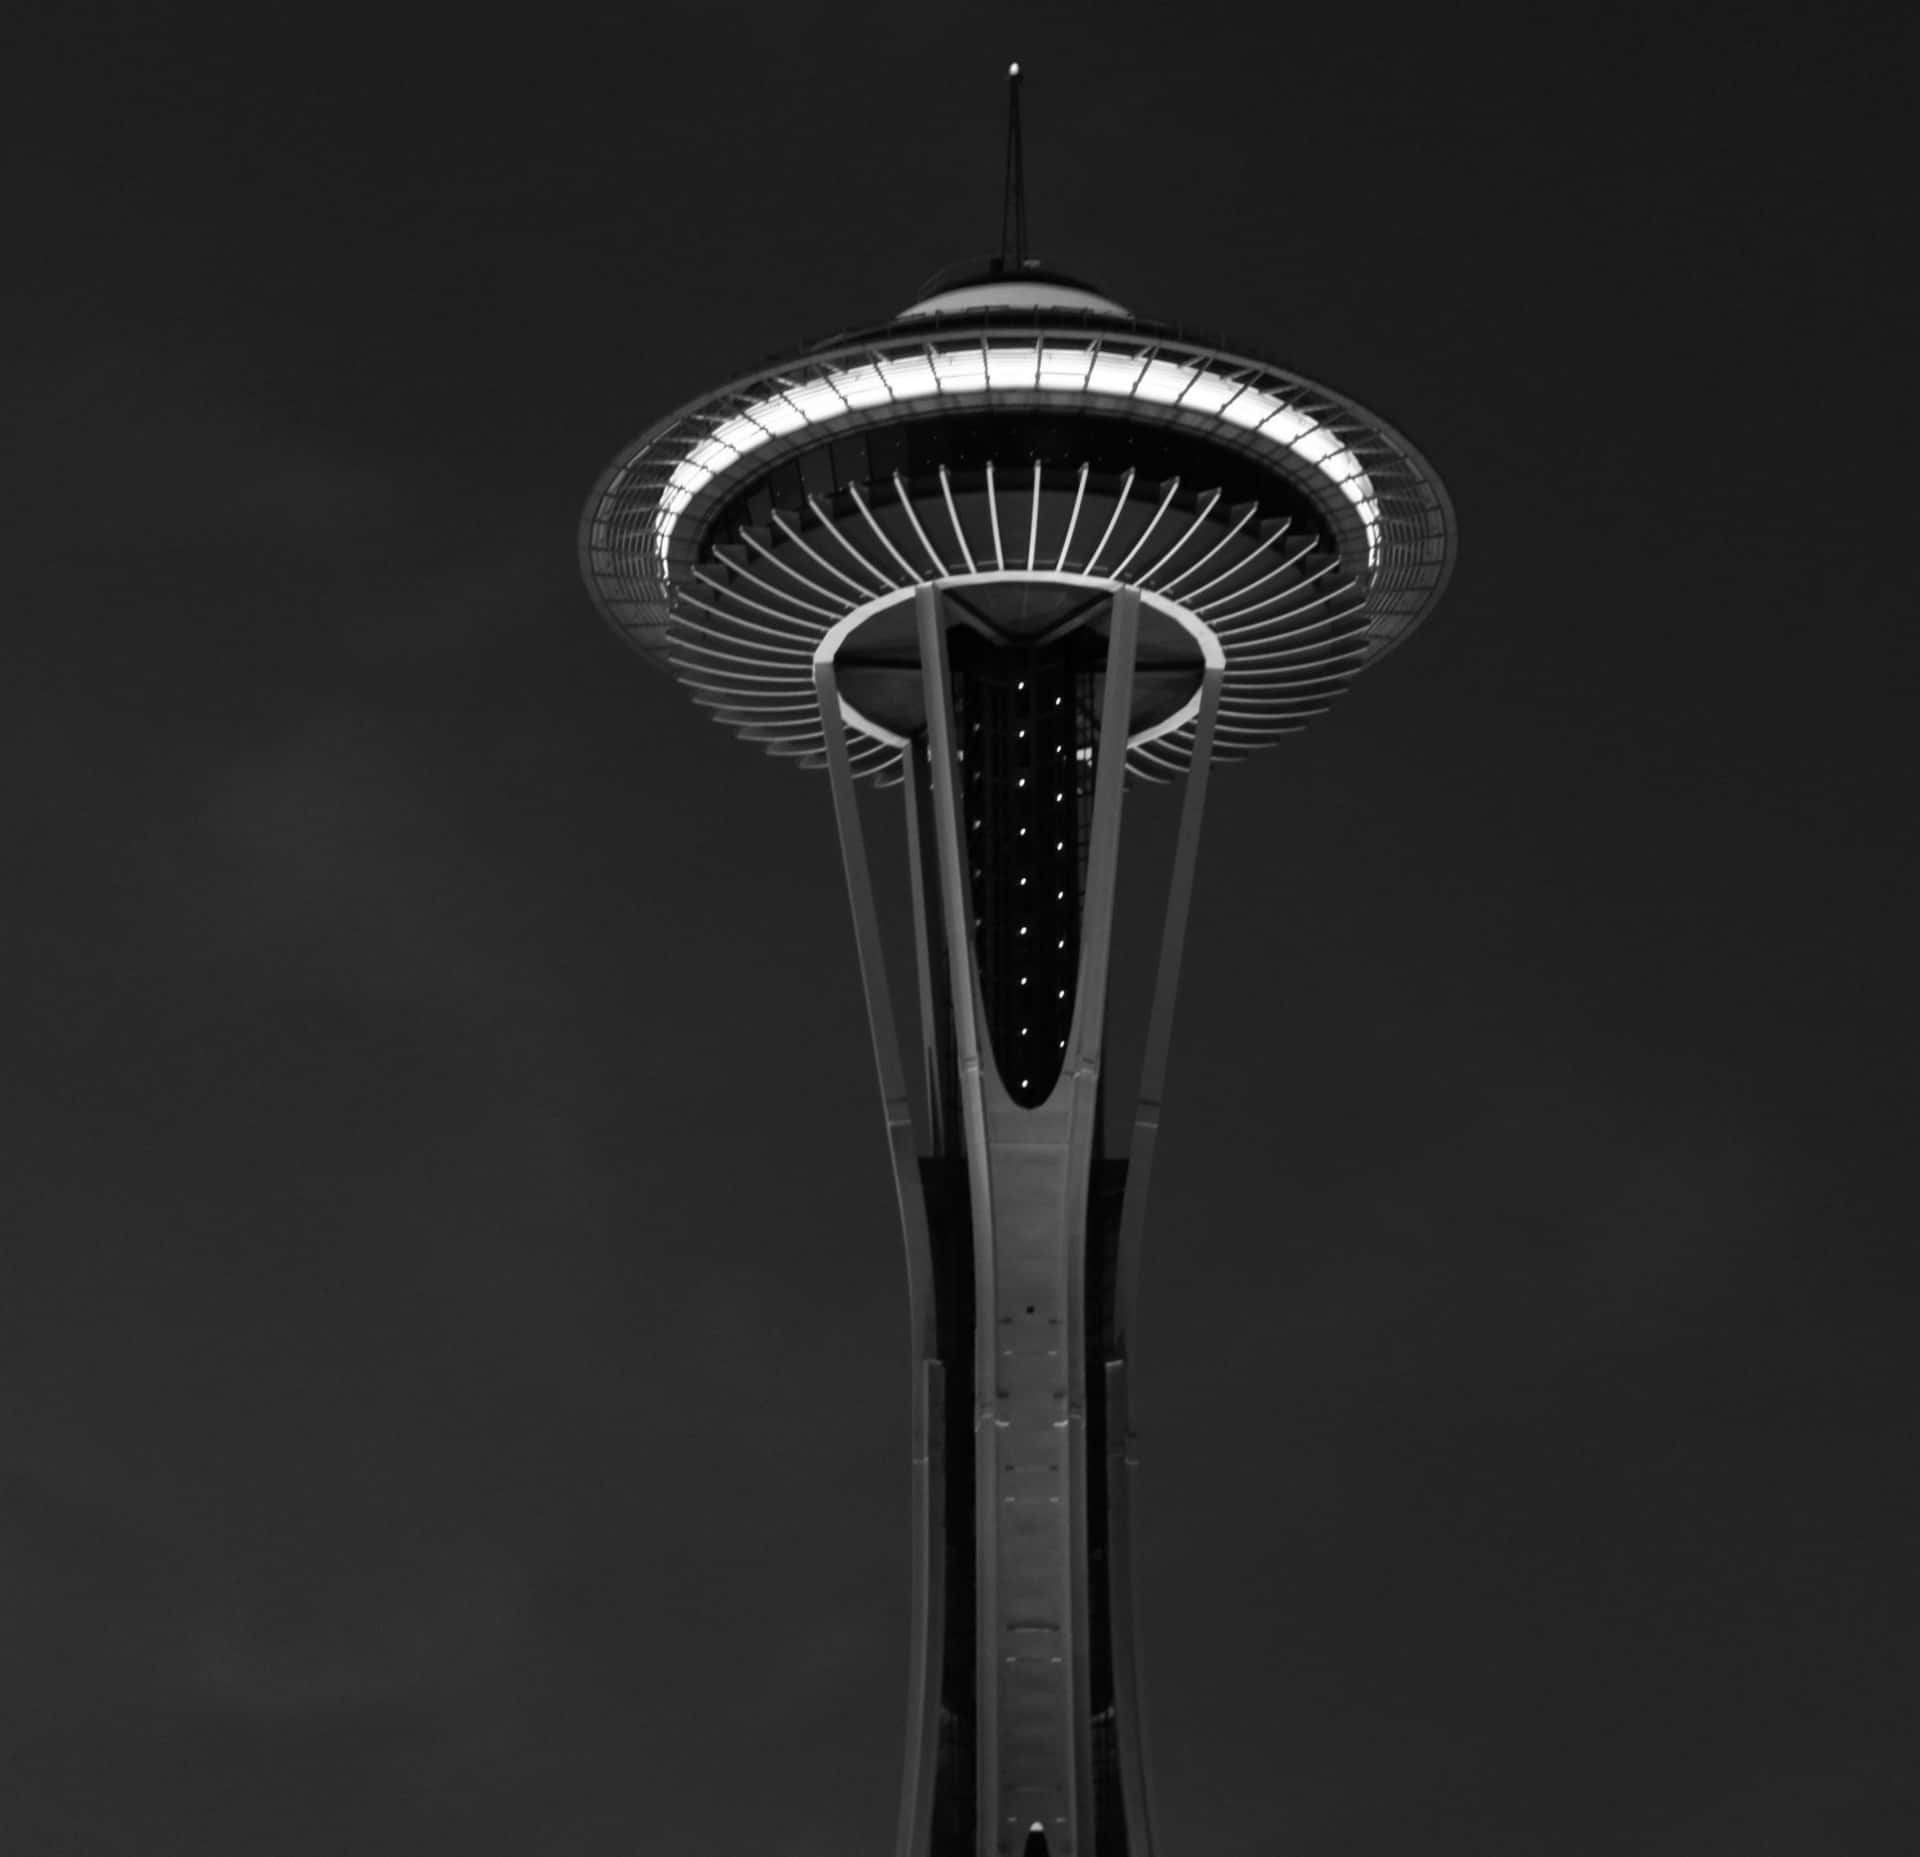 Agujaespacial En Seattle En Blanco Y Negro Fondo de pantalla